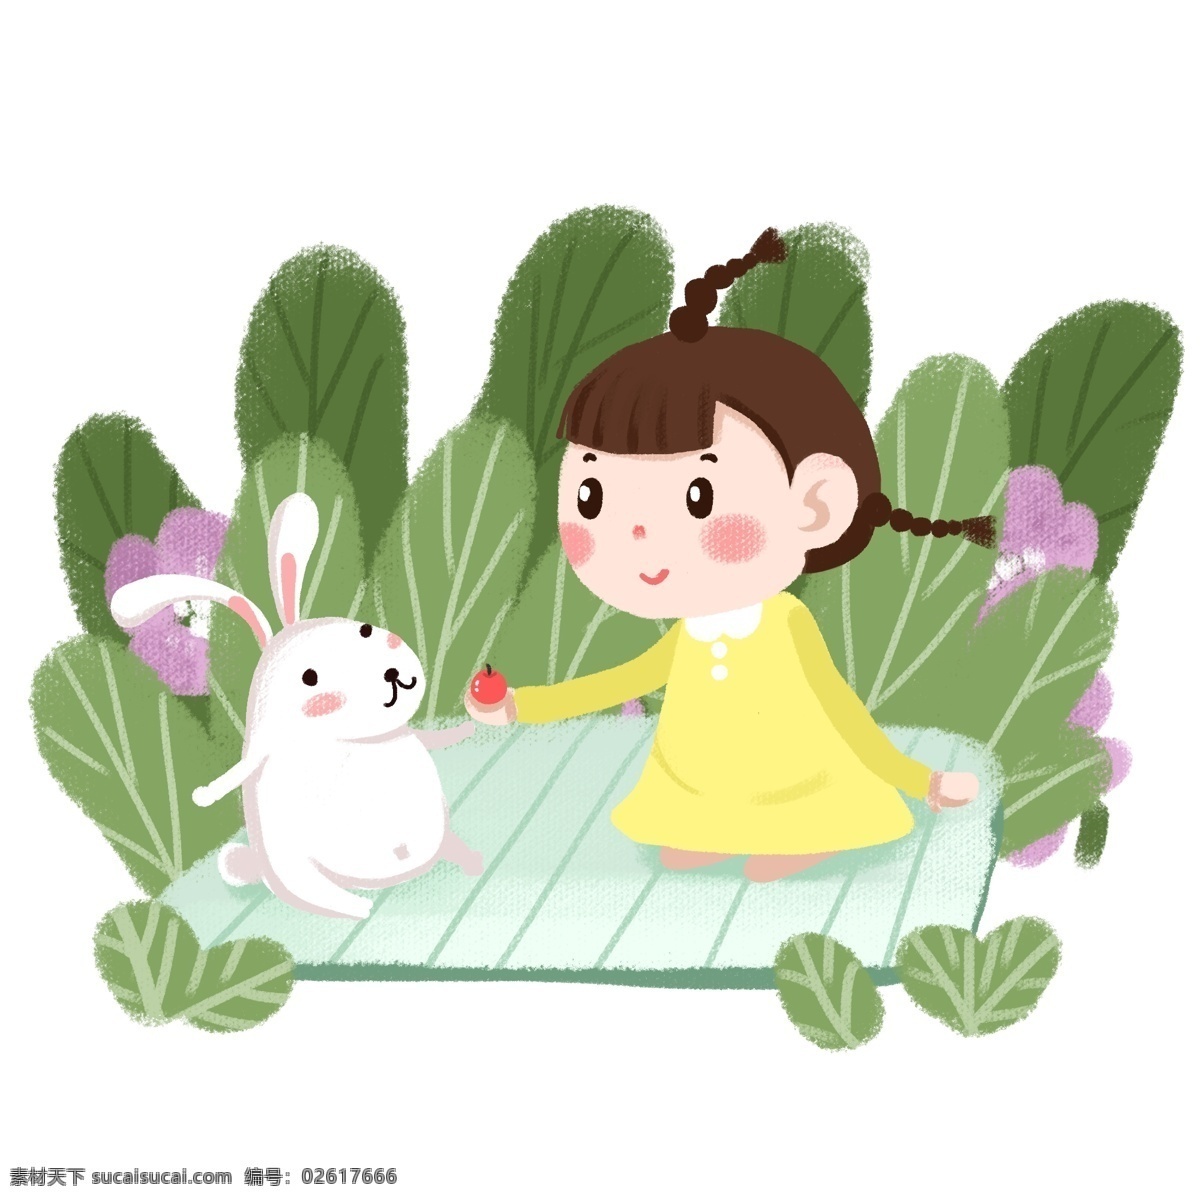 卡通 手绘 童话故事 手绘小女孩 手绘小兔子 手绘植物 儿童插画 梦幻 童话 梦境 小朋友 插图